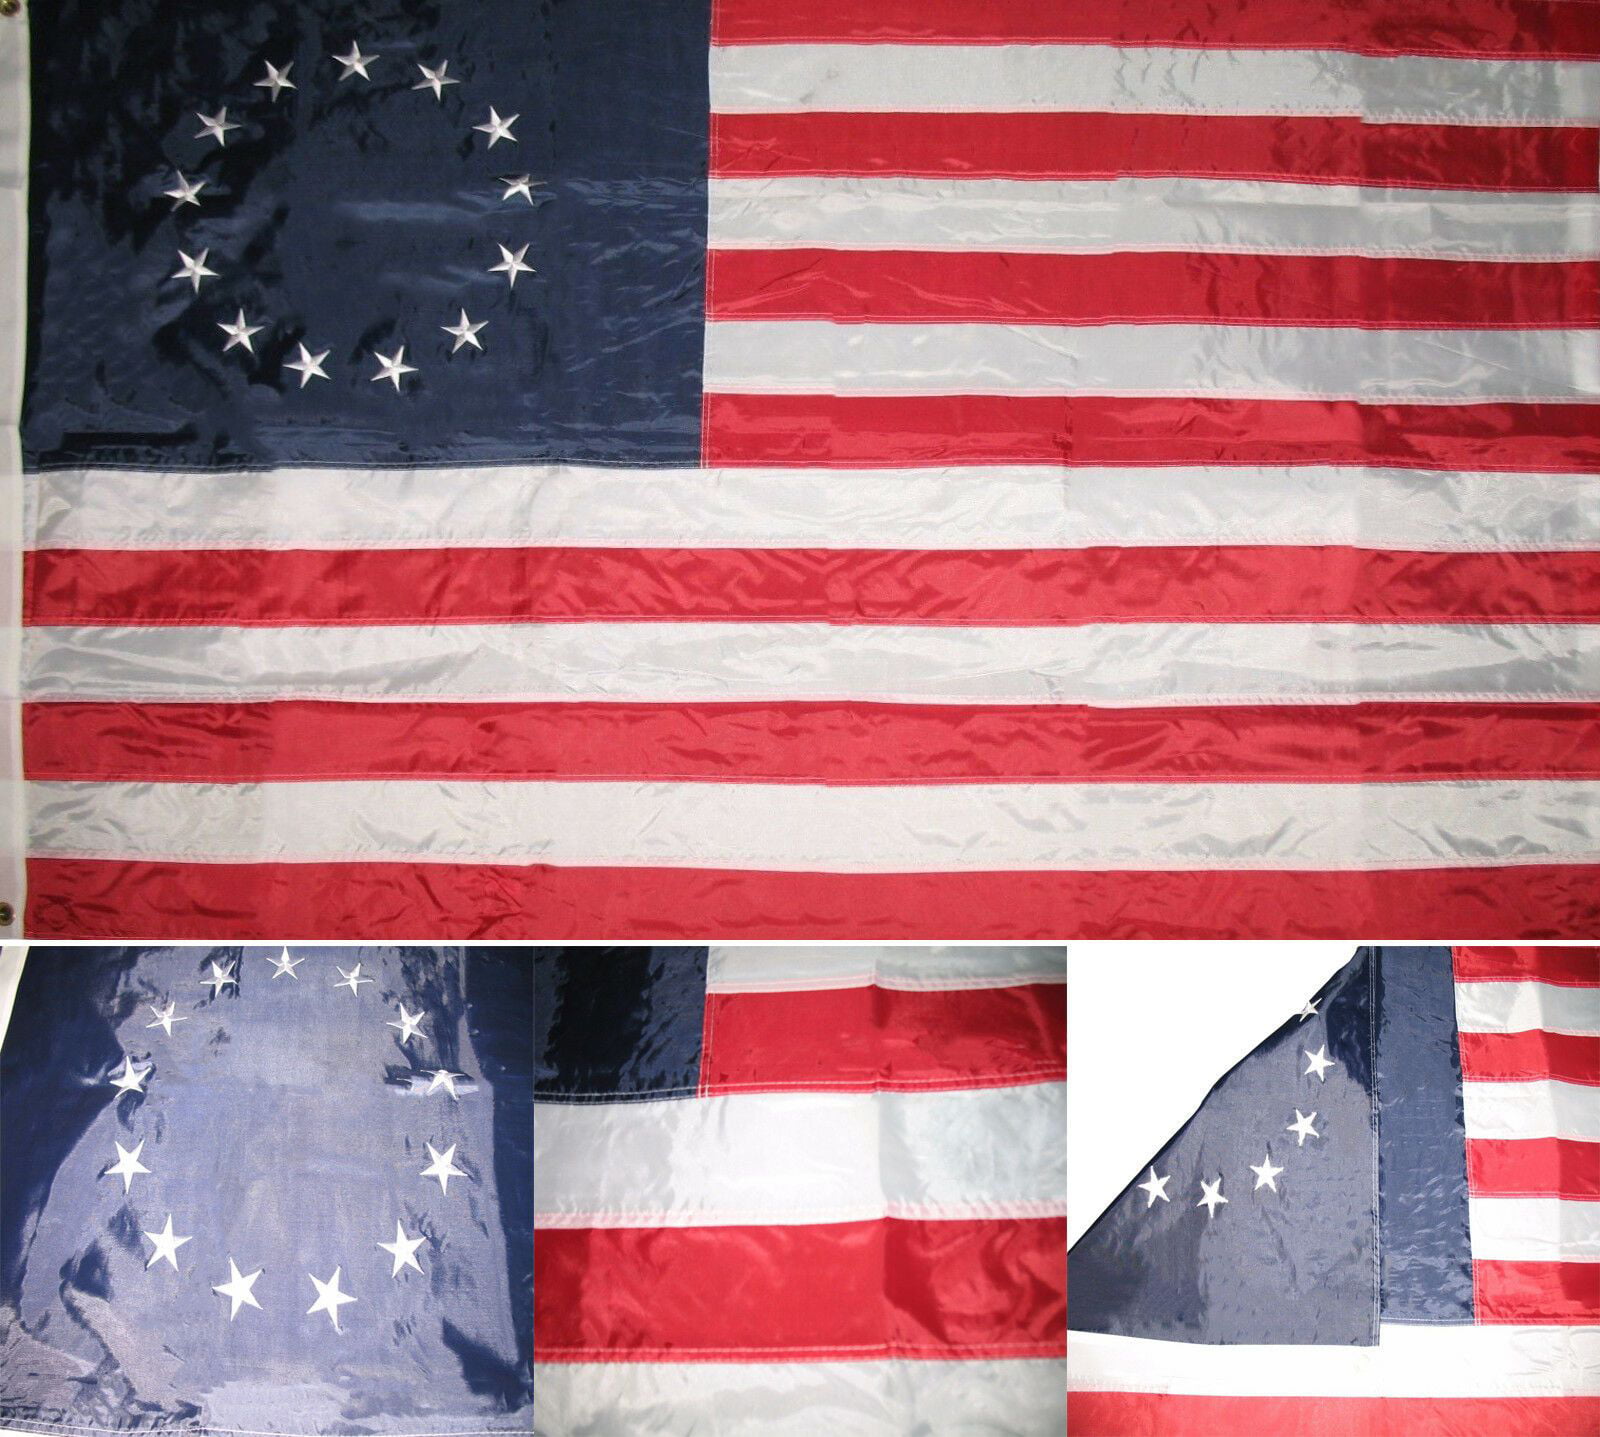 Betsy Ross Flag 210D Nylon Grommets Patriotic American USA Stars Stripes 4x6' FT 